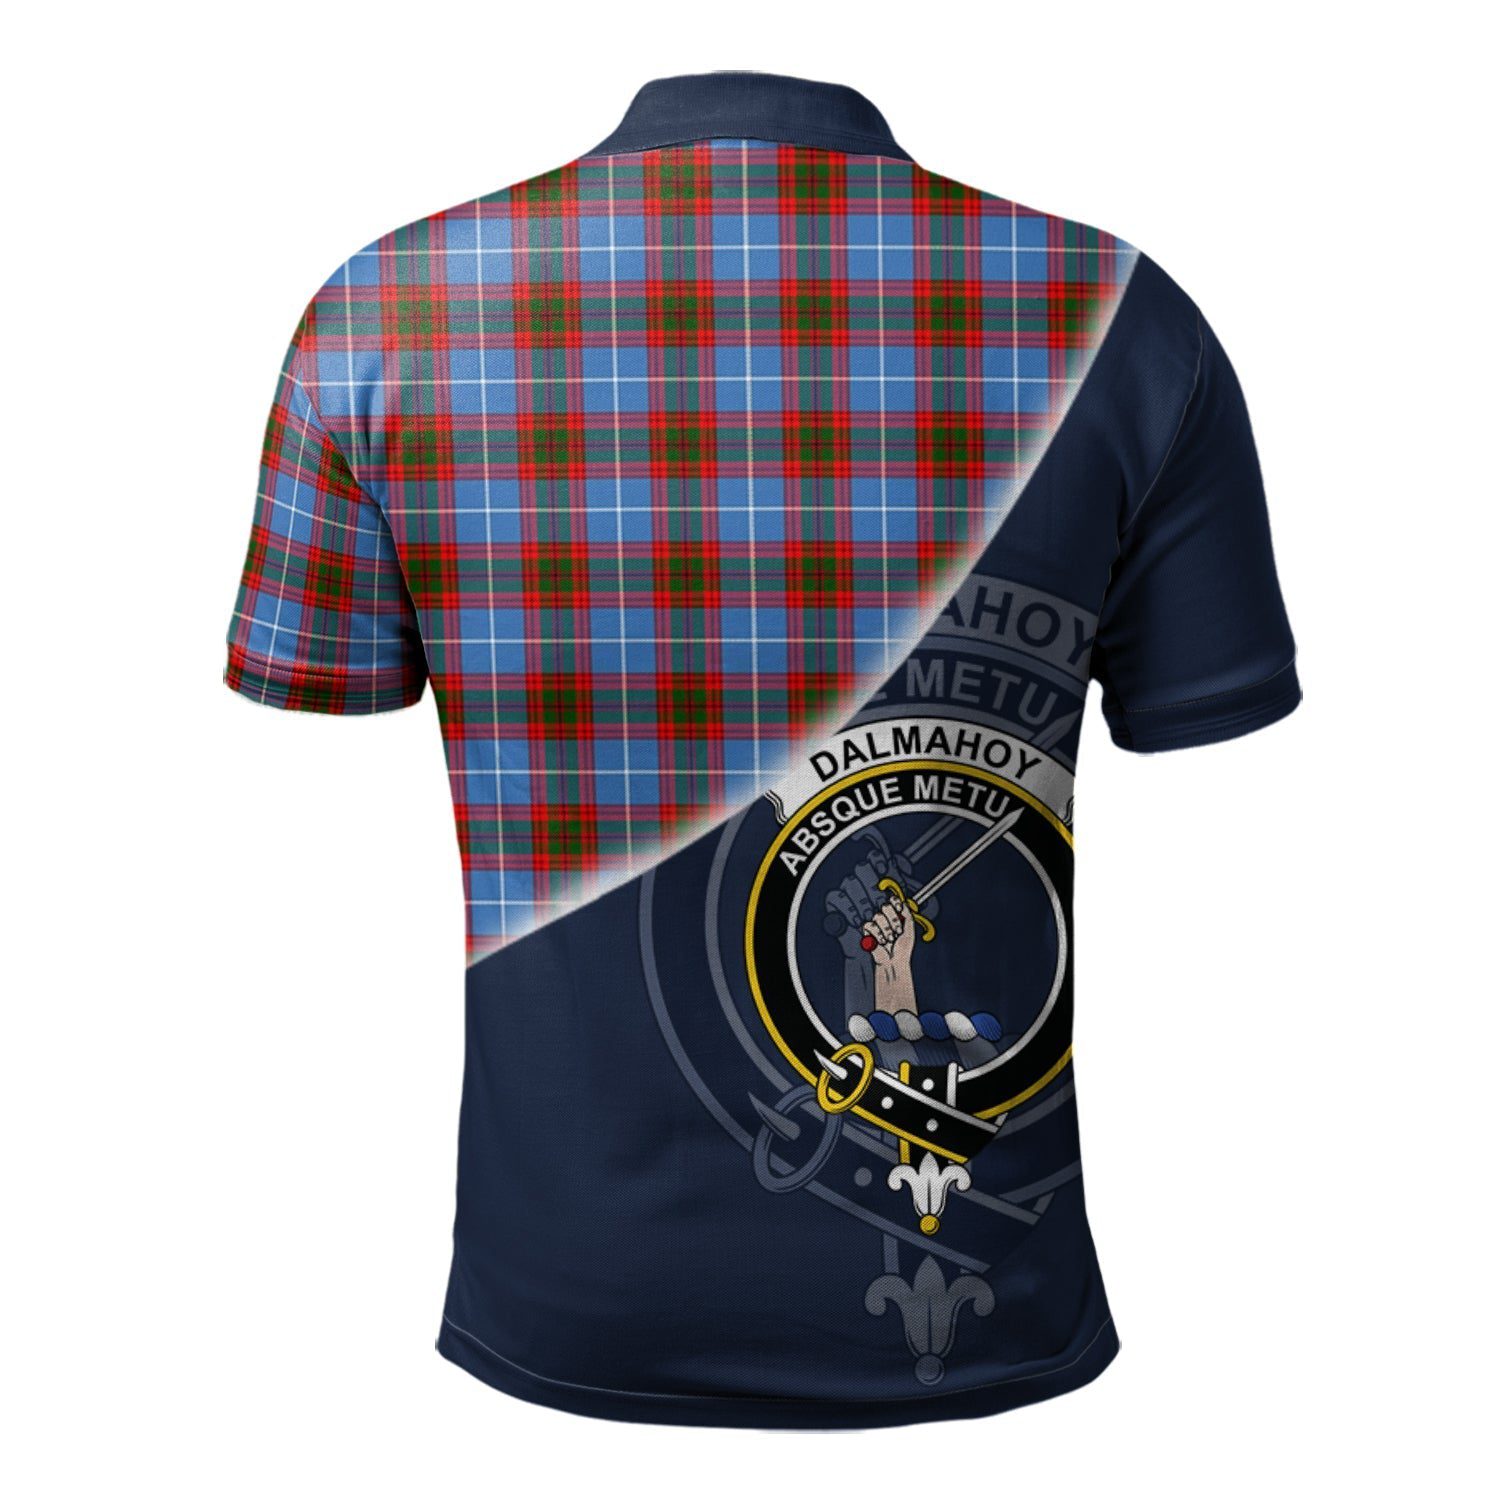 Dalmahoy Clan Scotland Golf Polo, Tartan Mens Polo Shirts with Scottish Flag Half Style K23